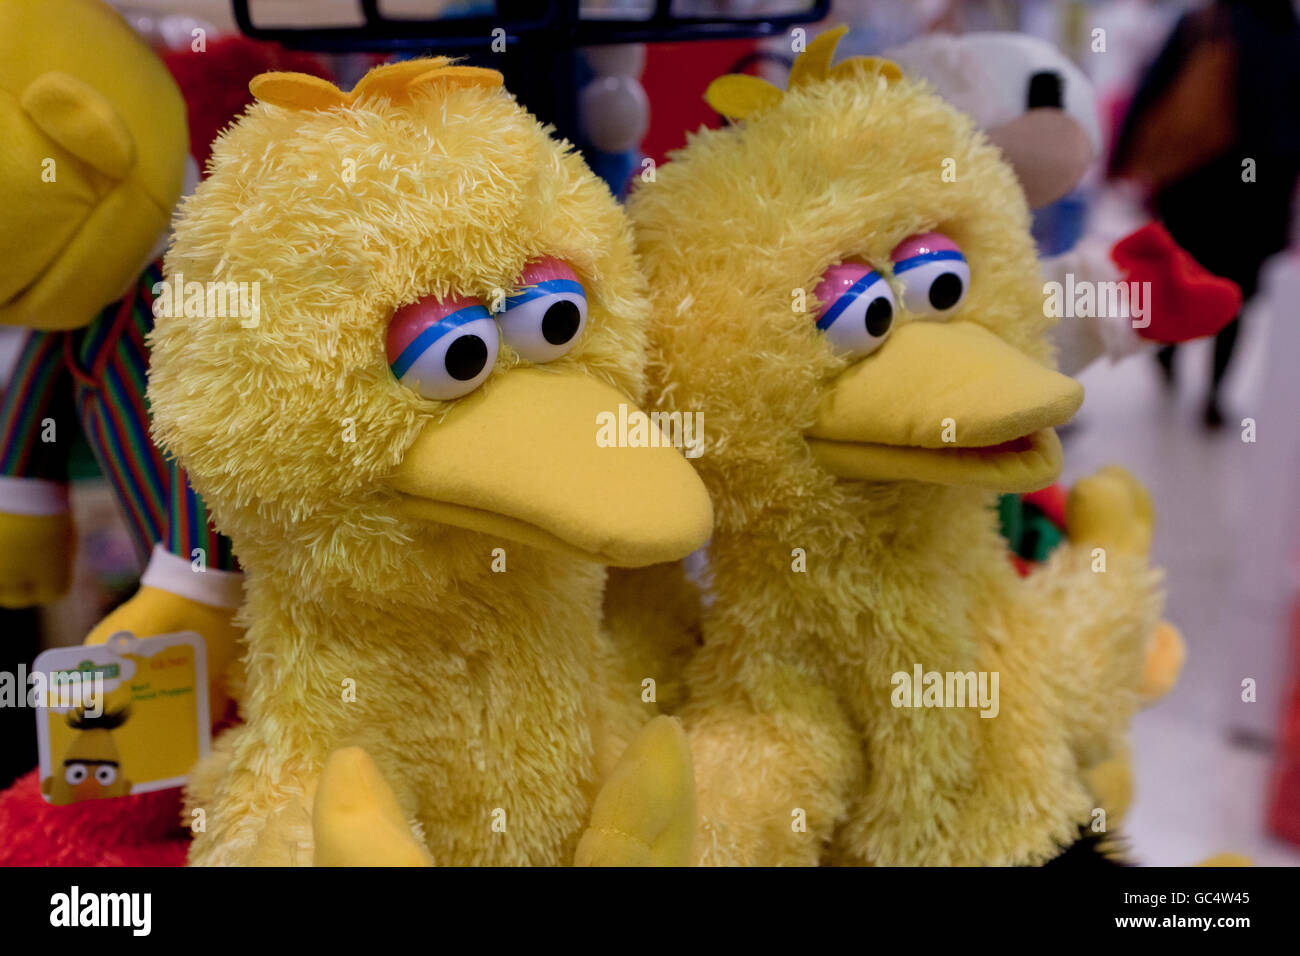 Grand oiseau de marionnettes au magasin de jouets - USA Banque D'Images